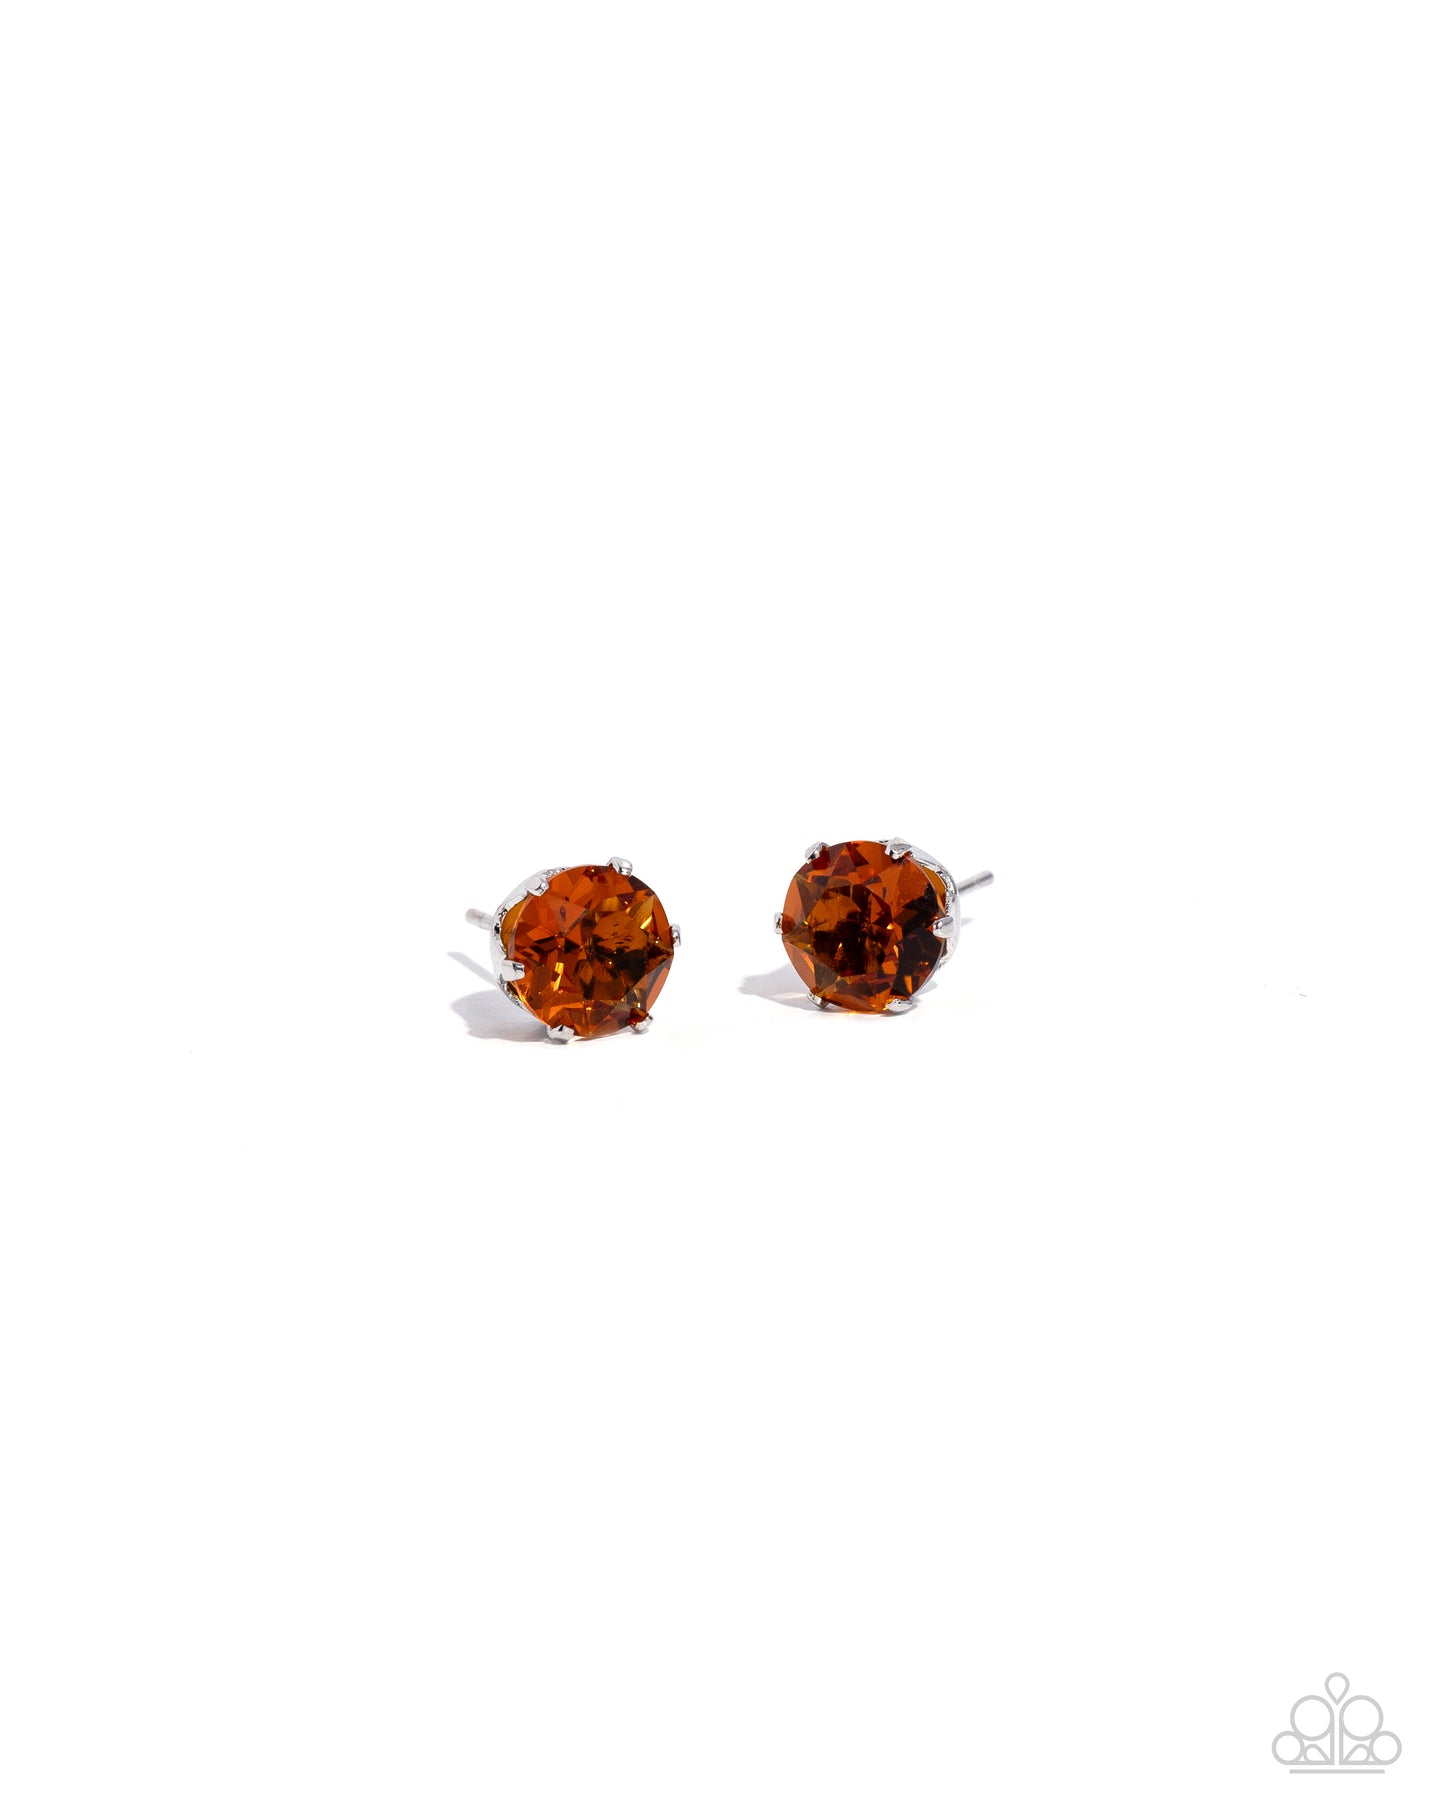 Paparazzi Earrings - Breathtaking Birthstone - Orange